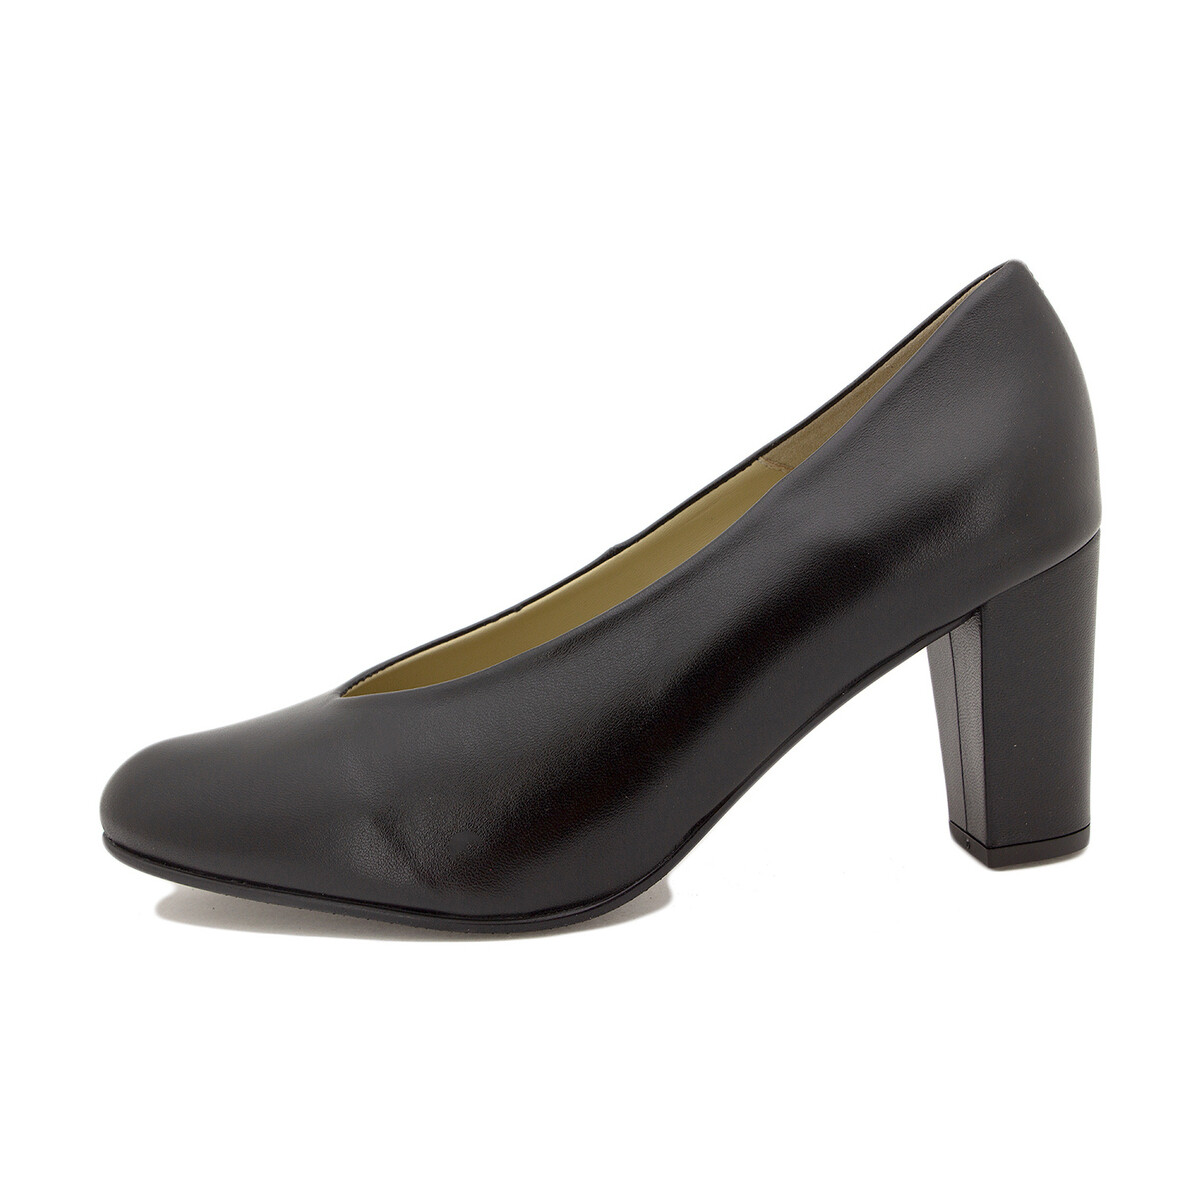 Chaussures Femme Escarpins Piesanto 225202 Noir